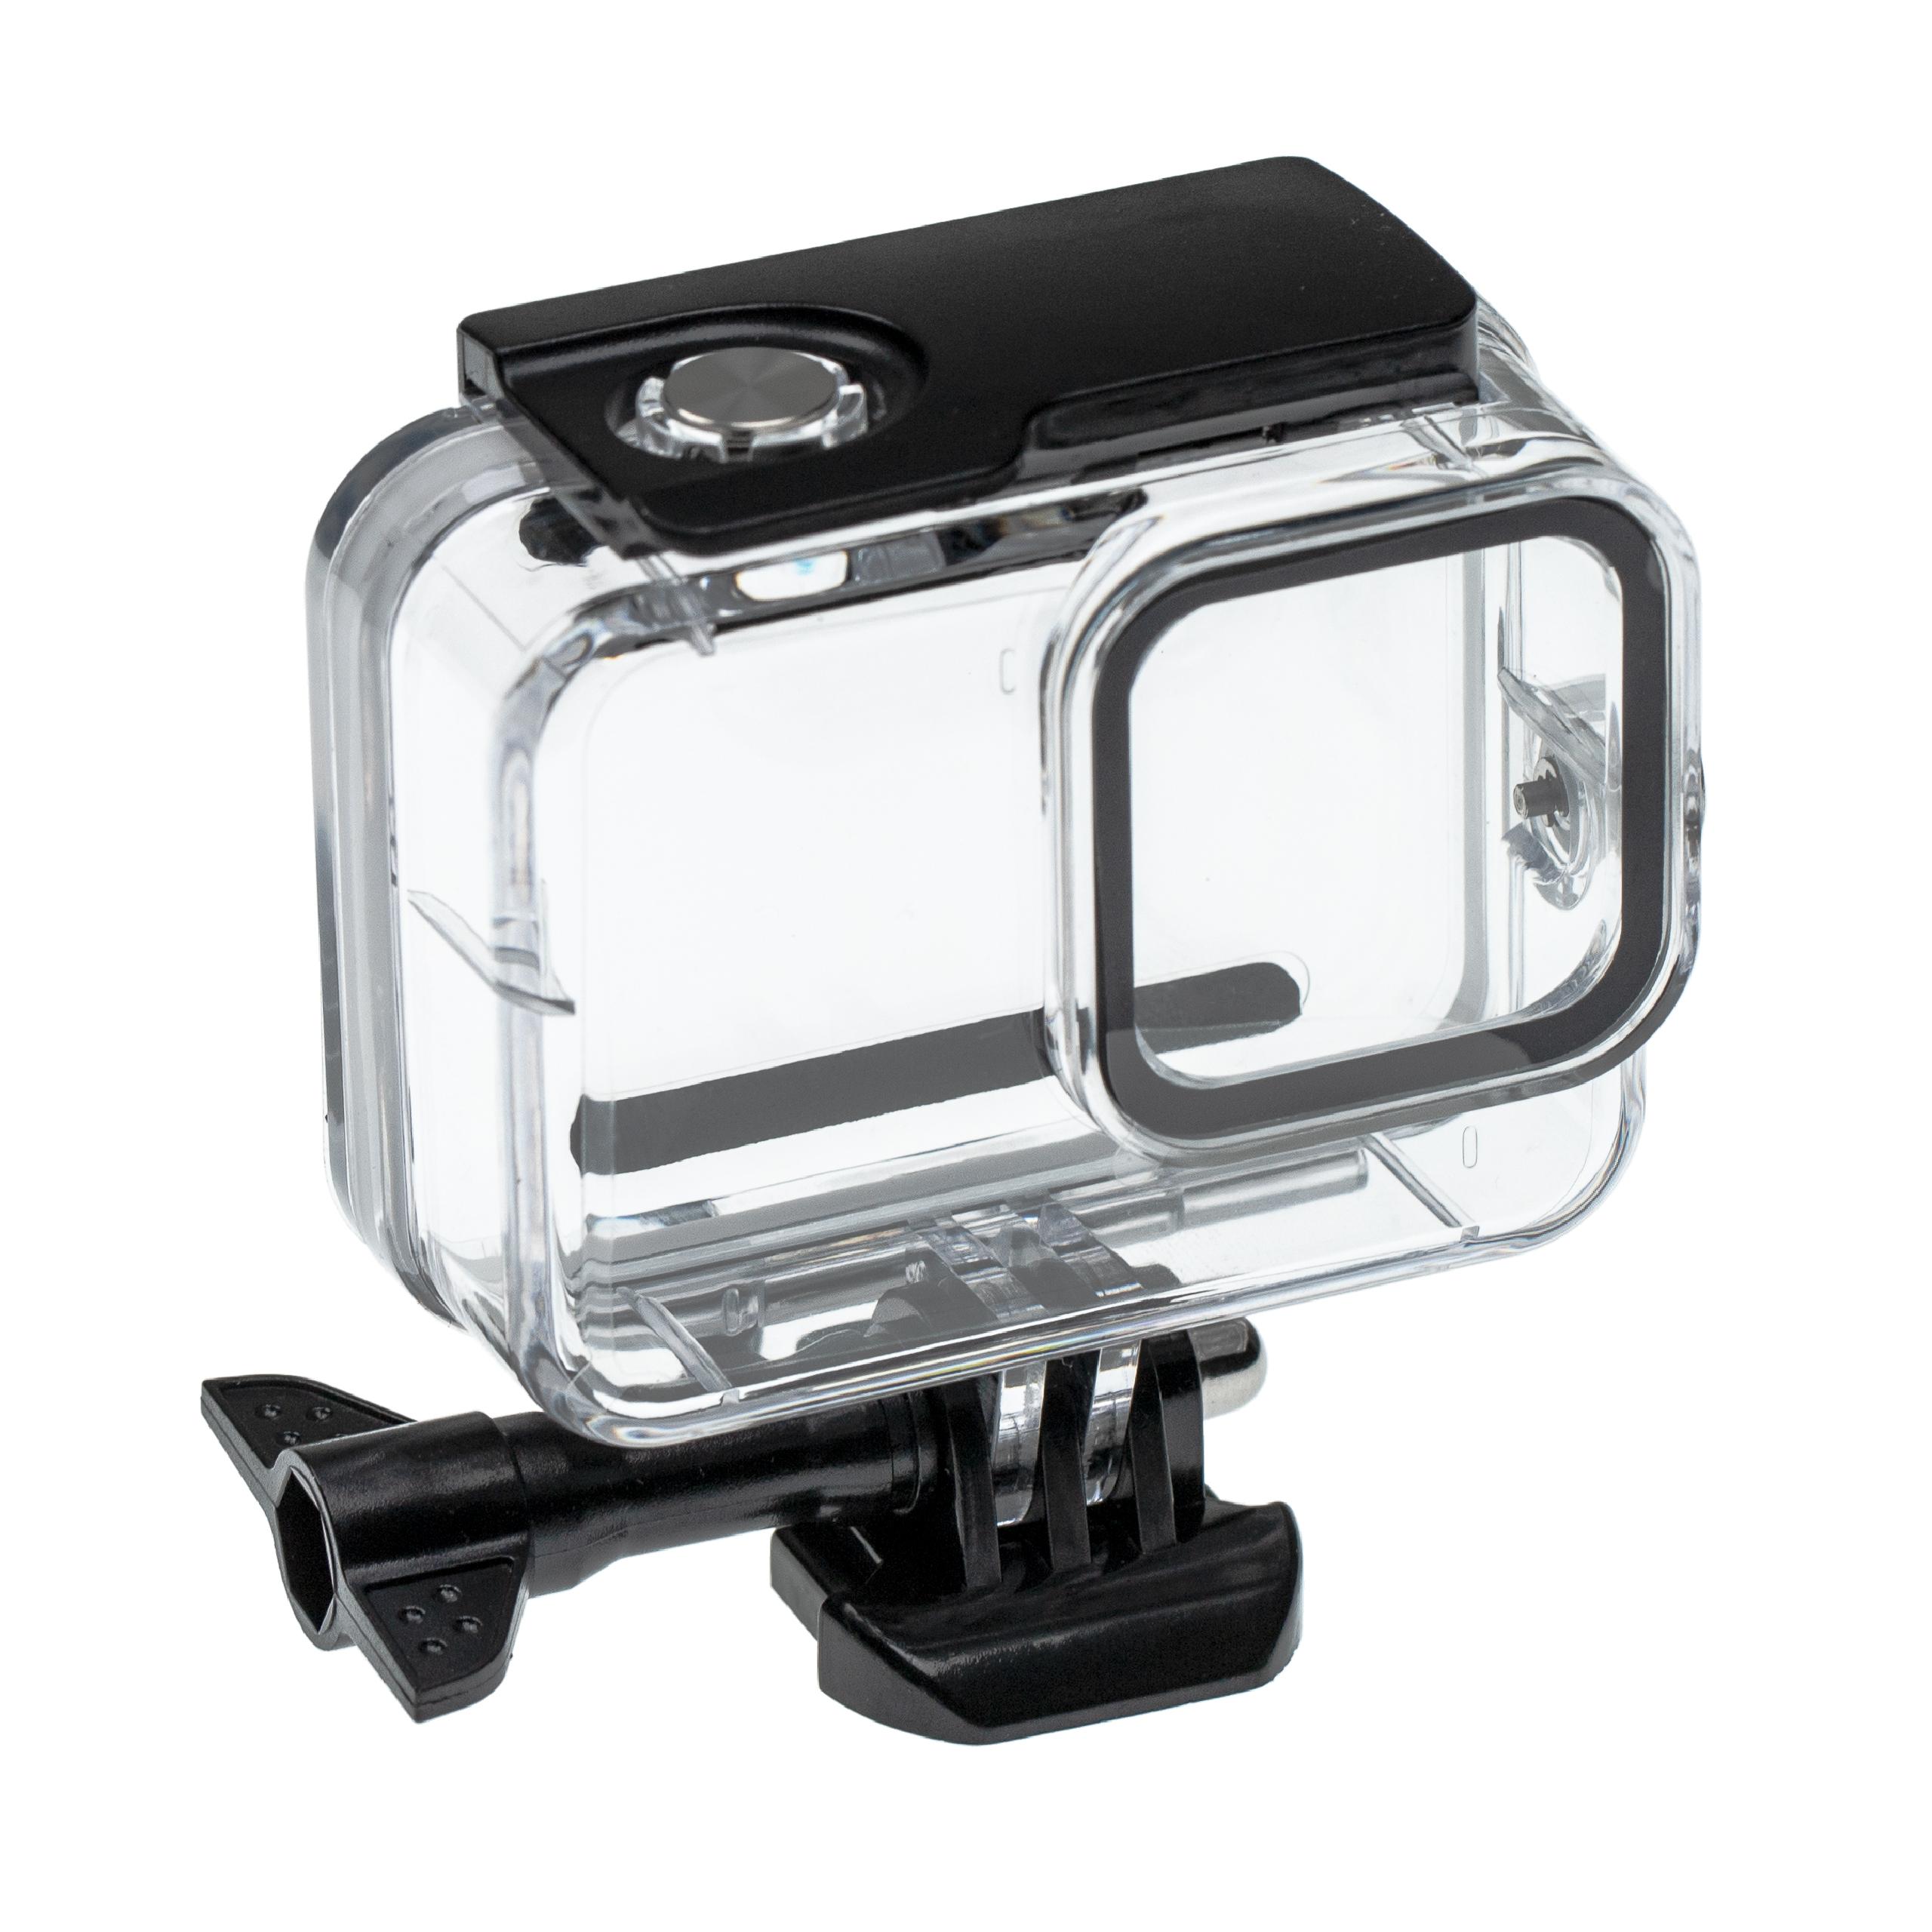 Boîtier étanche pour action cam GoPro Hero 8 - profondeur max. 60 m